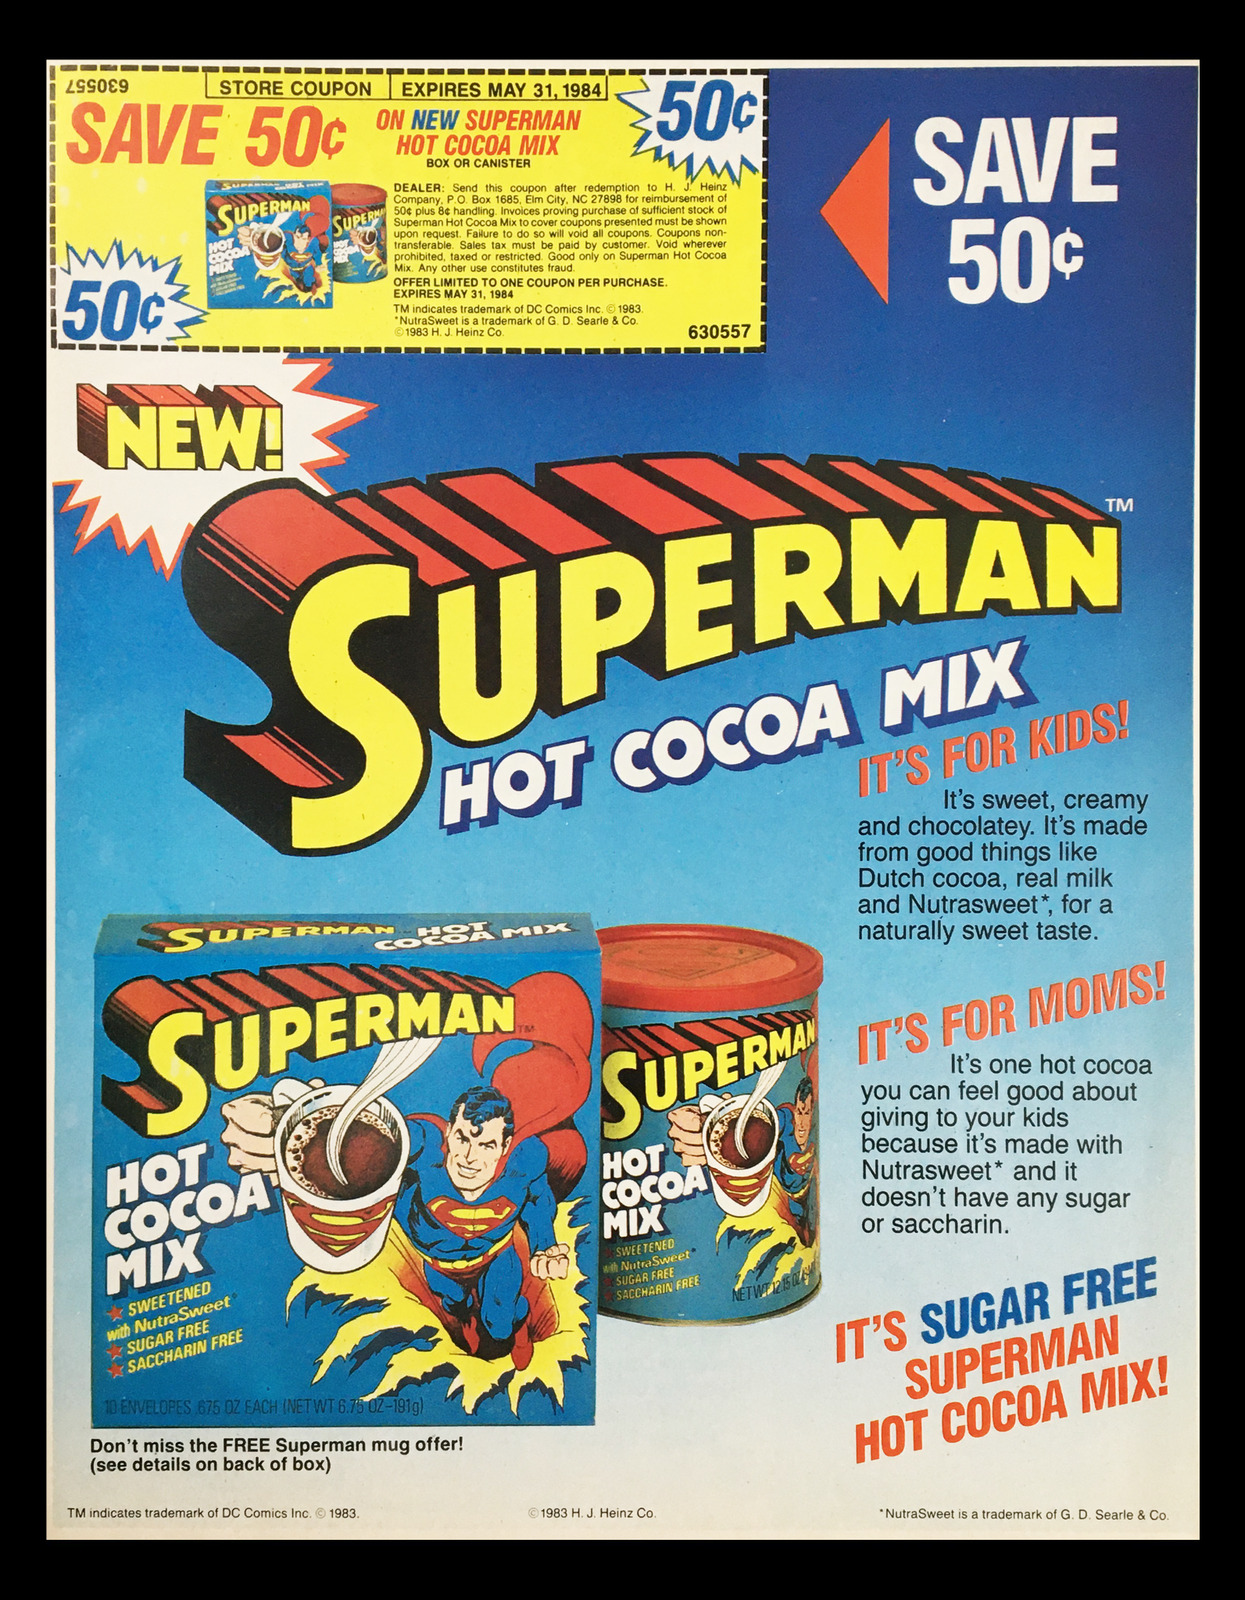 1983 Superman Hot Cocoa Mix Circular Coupon Advertisement